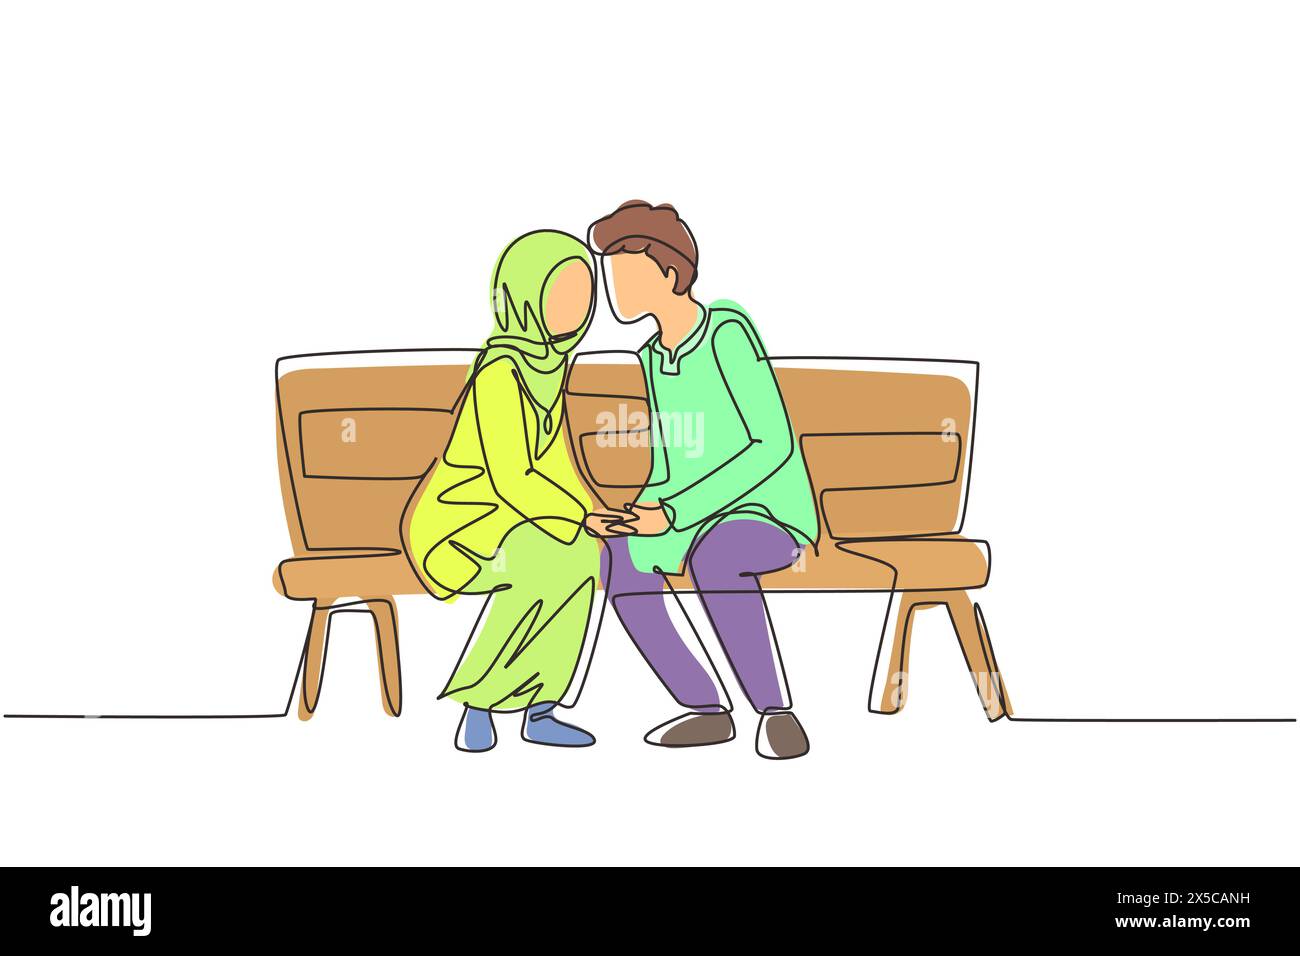 Durchgehende, einzeilige Zeichnung, die ein arabisches Paar küsst. Junger Mann und Frau von Angesicht zu Angesicht auf der Parkbank sitzen und lustig küssen. Romantisches Paar mit mir Stock Vektor